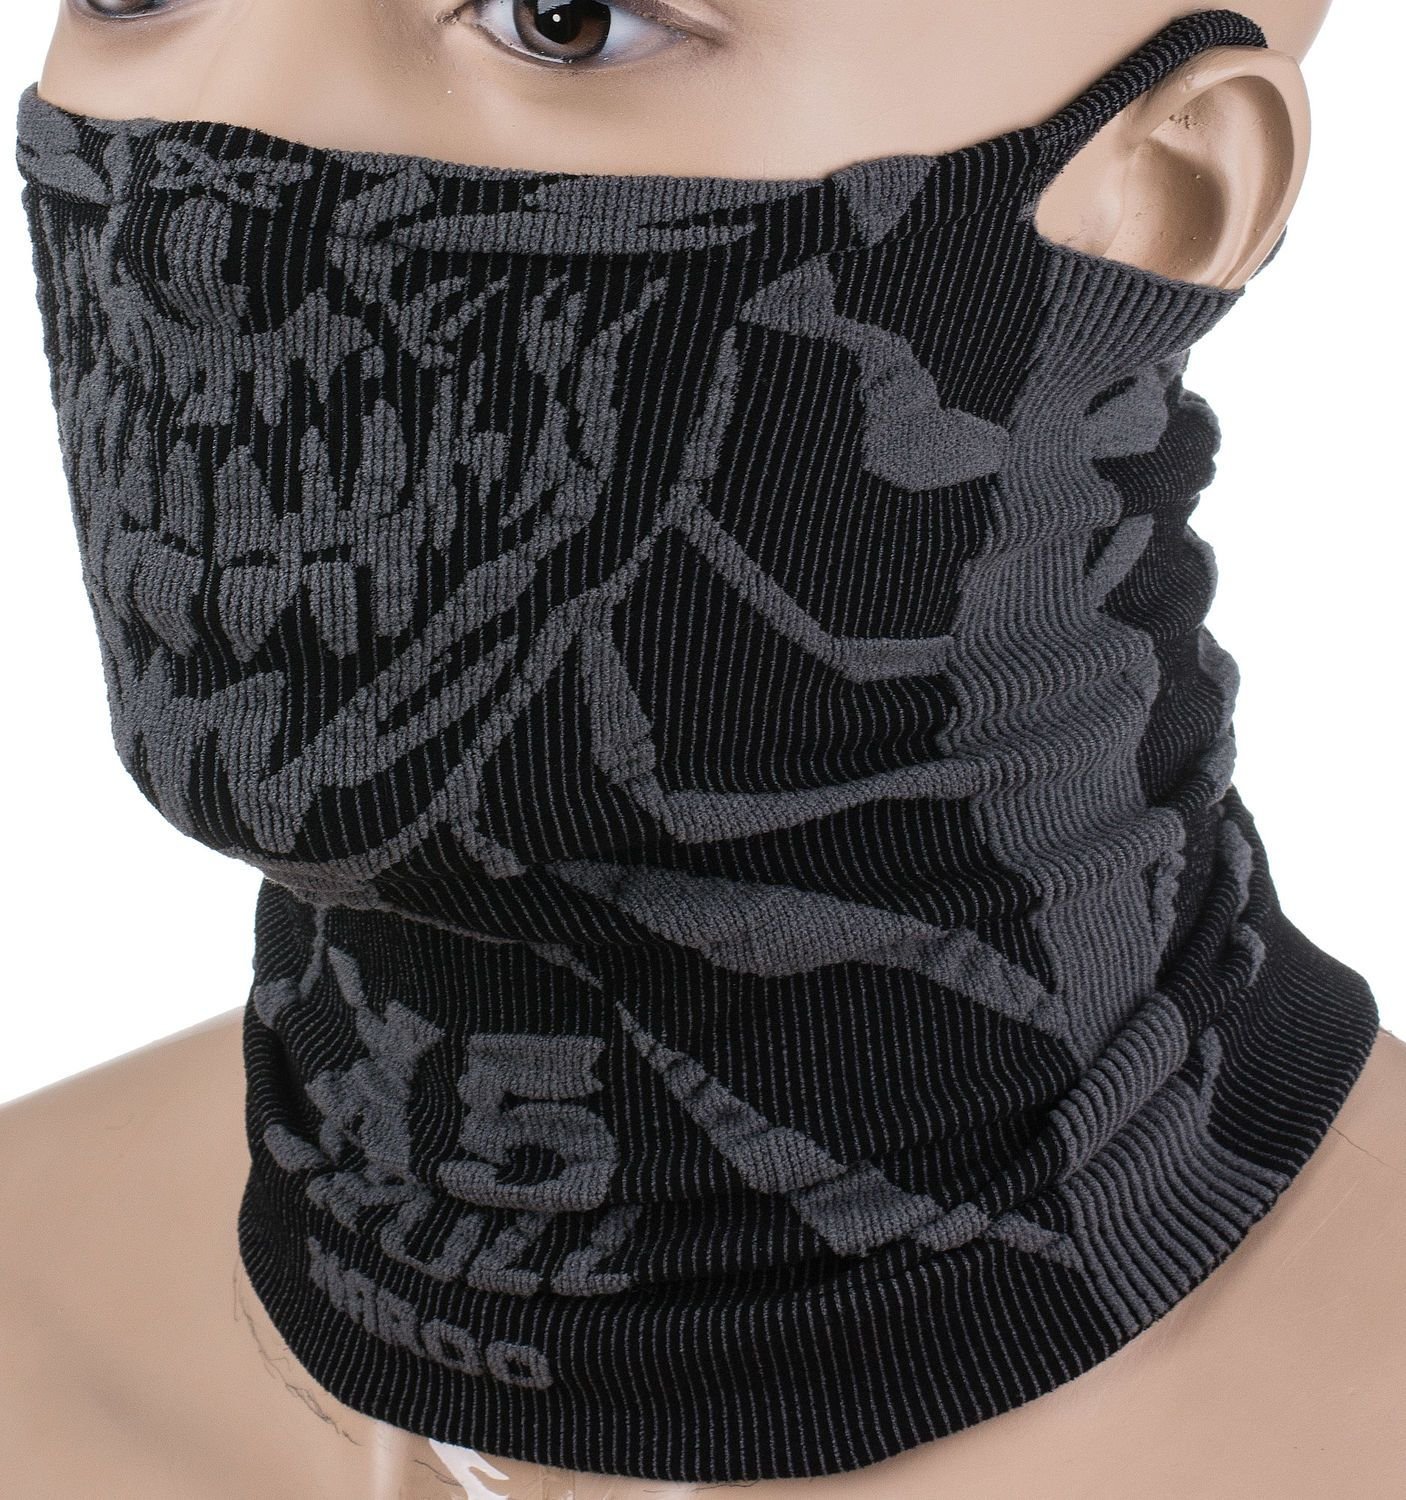 Mască de antrenament Naroo X5s Skull Black & Grey (STNO:X5sSKULL)